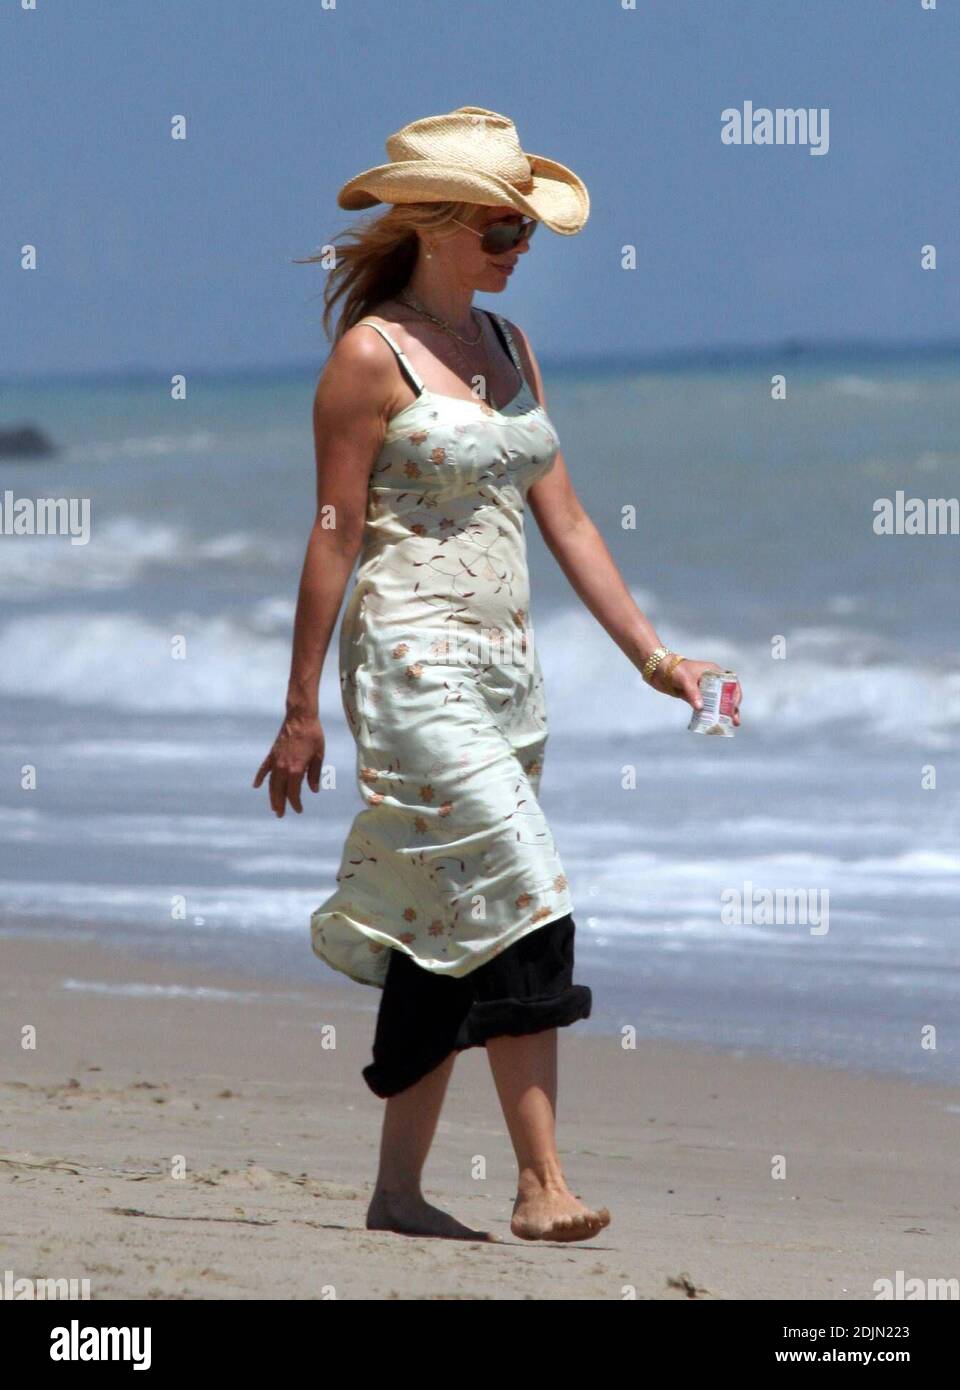 Rosanna Arquette fait une promenade sur la plage avec un ami tout en jouant à FETCH avec quelques chiens. Peut-être l'actrice est-elle consciente de la portée, car elle semble être en fourre-tout un pot de yogourt rempli de sable. Malibu, Calif. 7/9/06 Banque D'Images